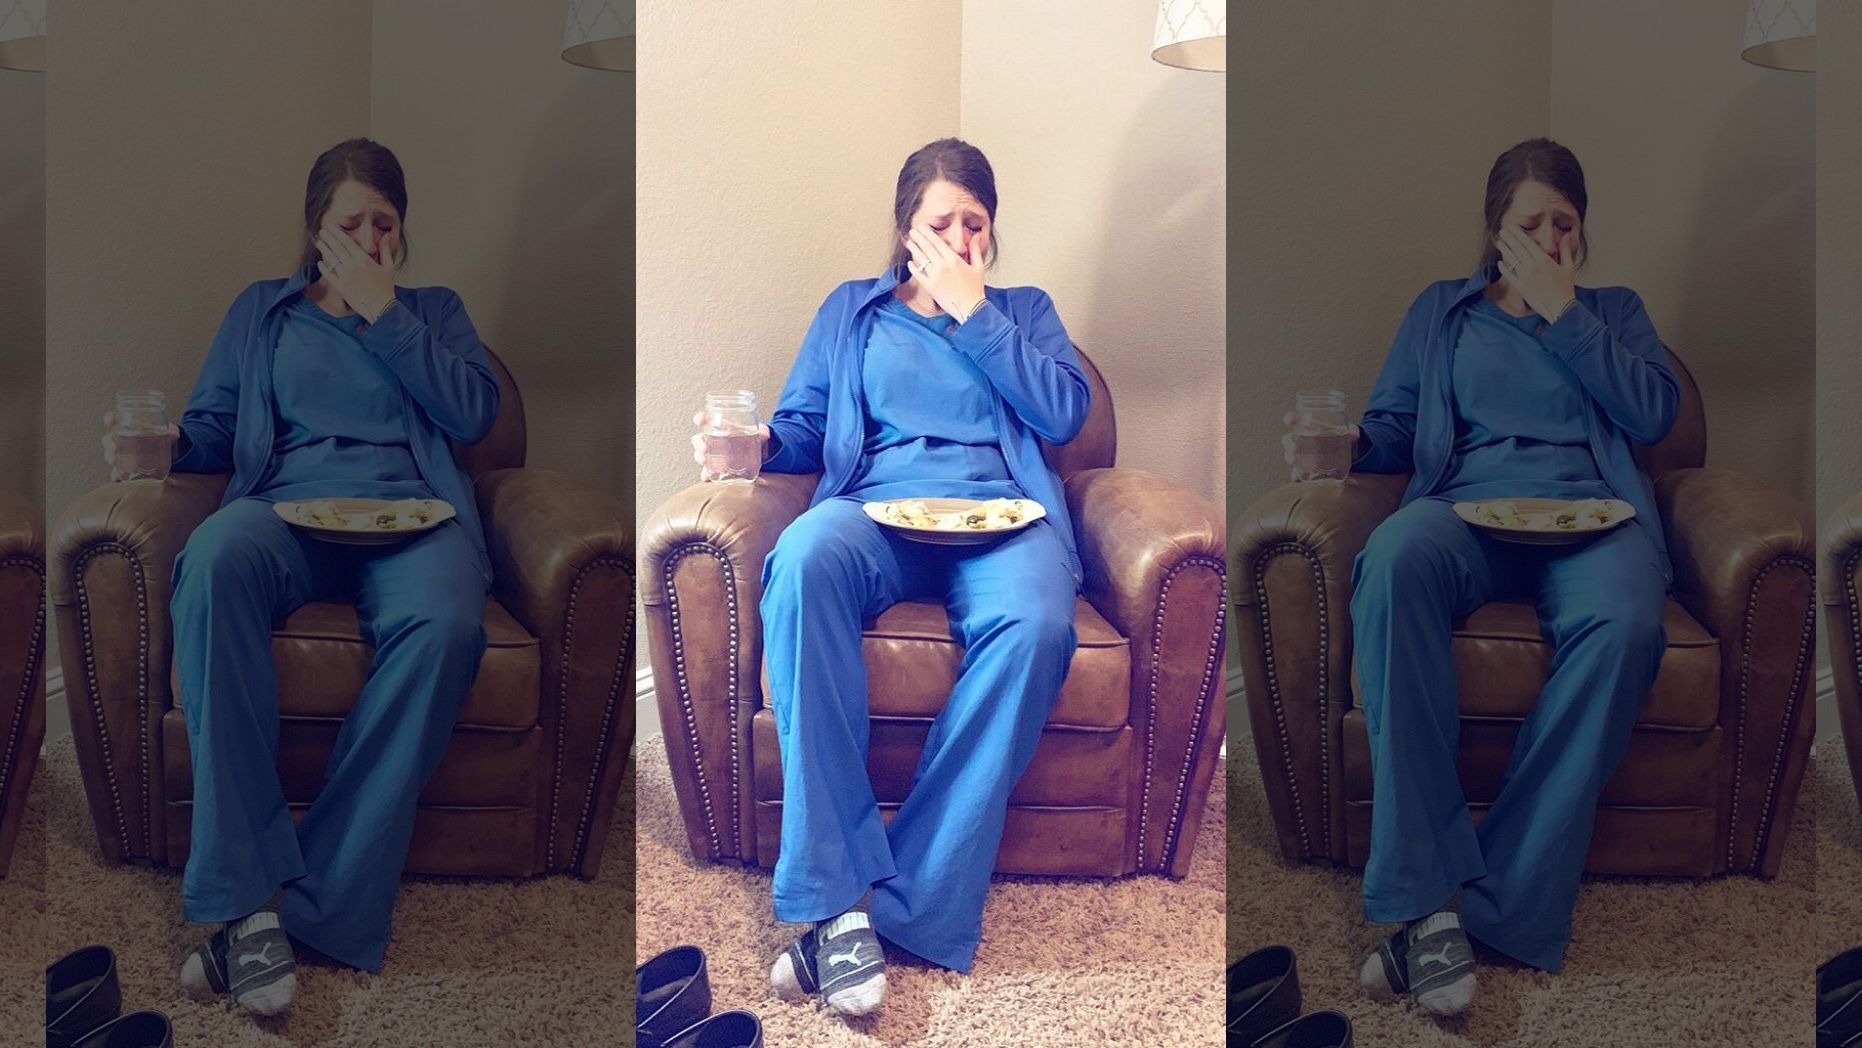   Caty Nixton - nữ y tá bật khóc sau giờ làm việc (Ảnh Internet)  